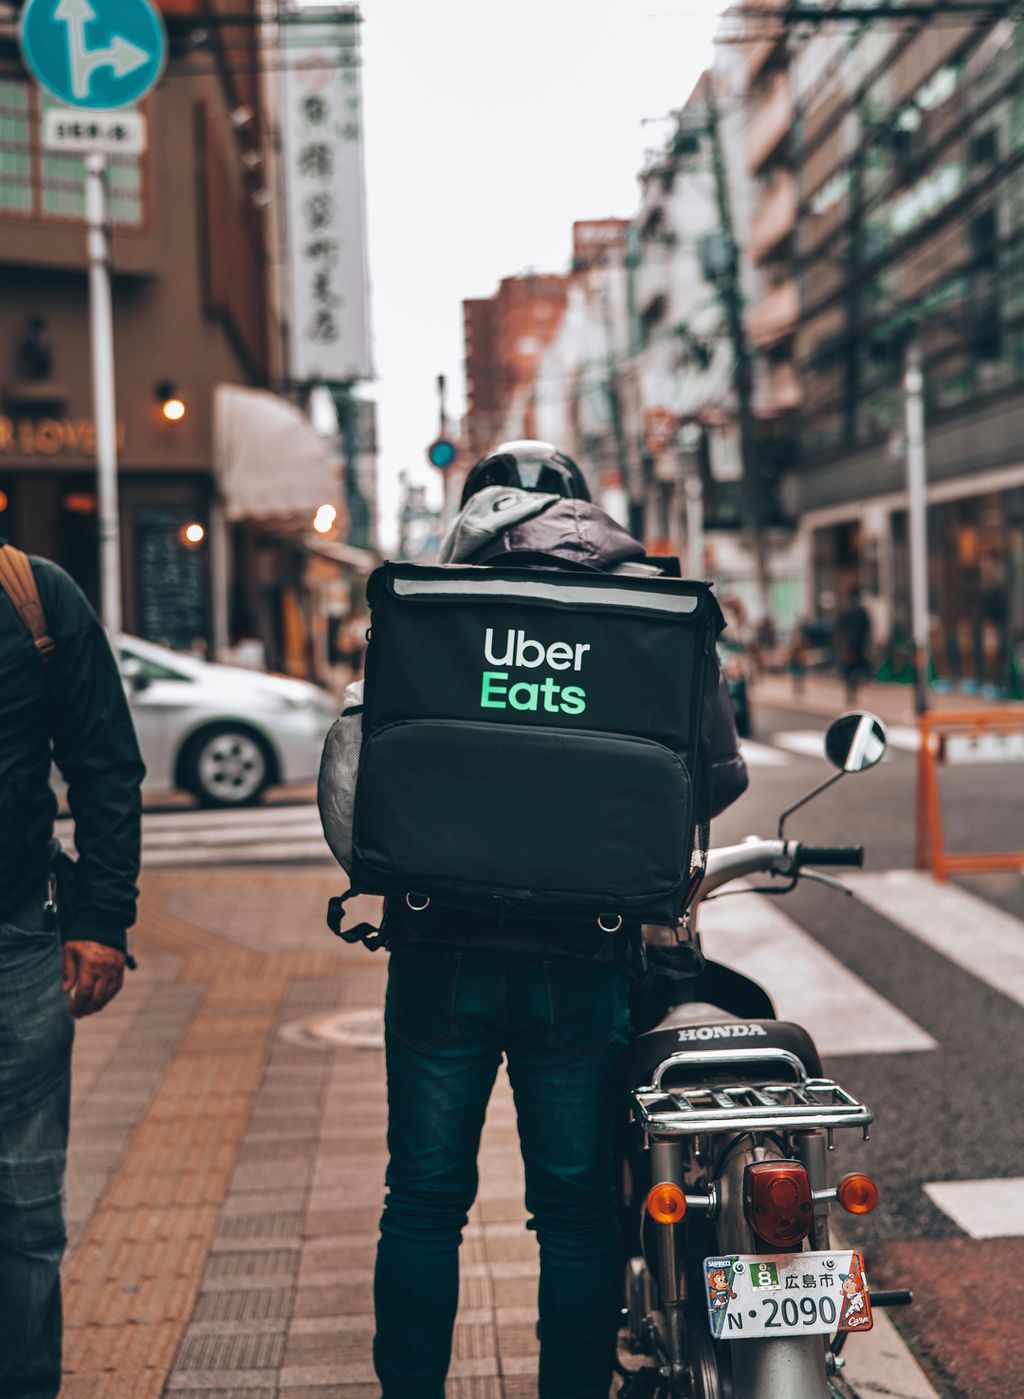 O Uber Eats também acionou o iFood sobre práticas anticompetitivas (Foto: eggbank/Unsplash)